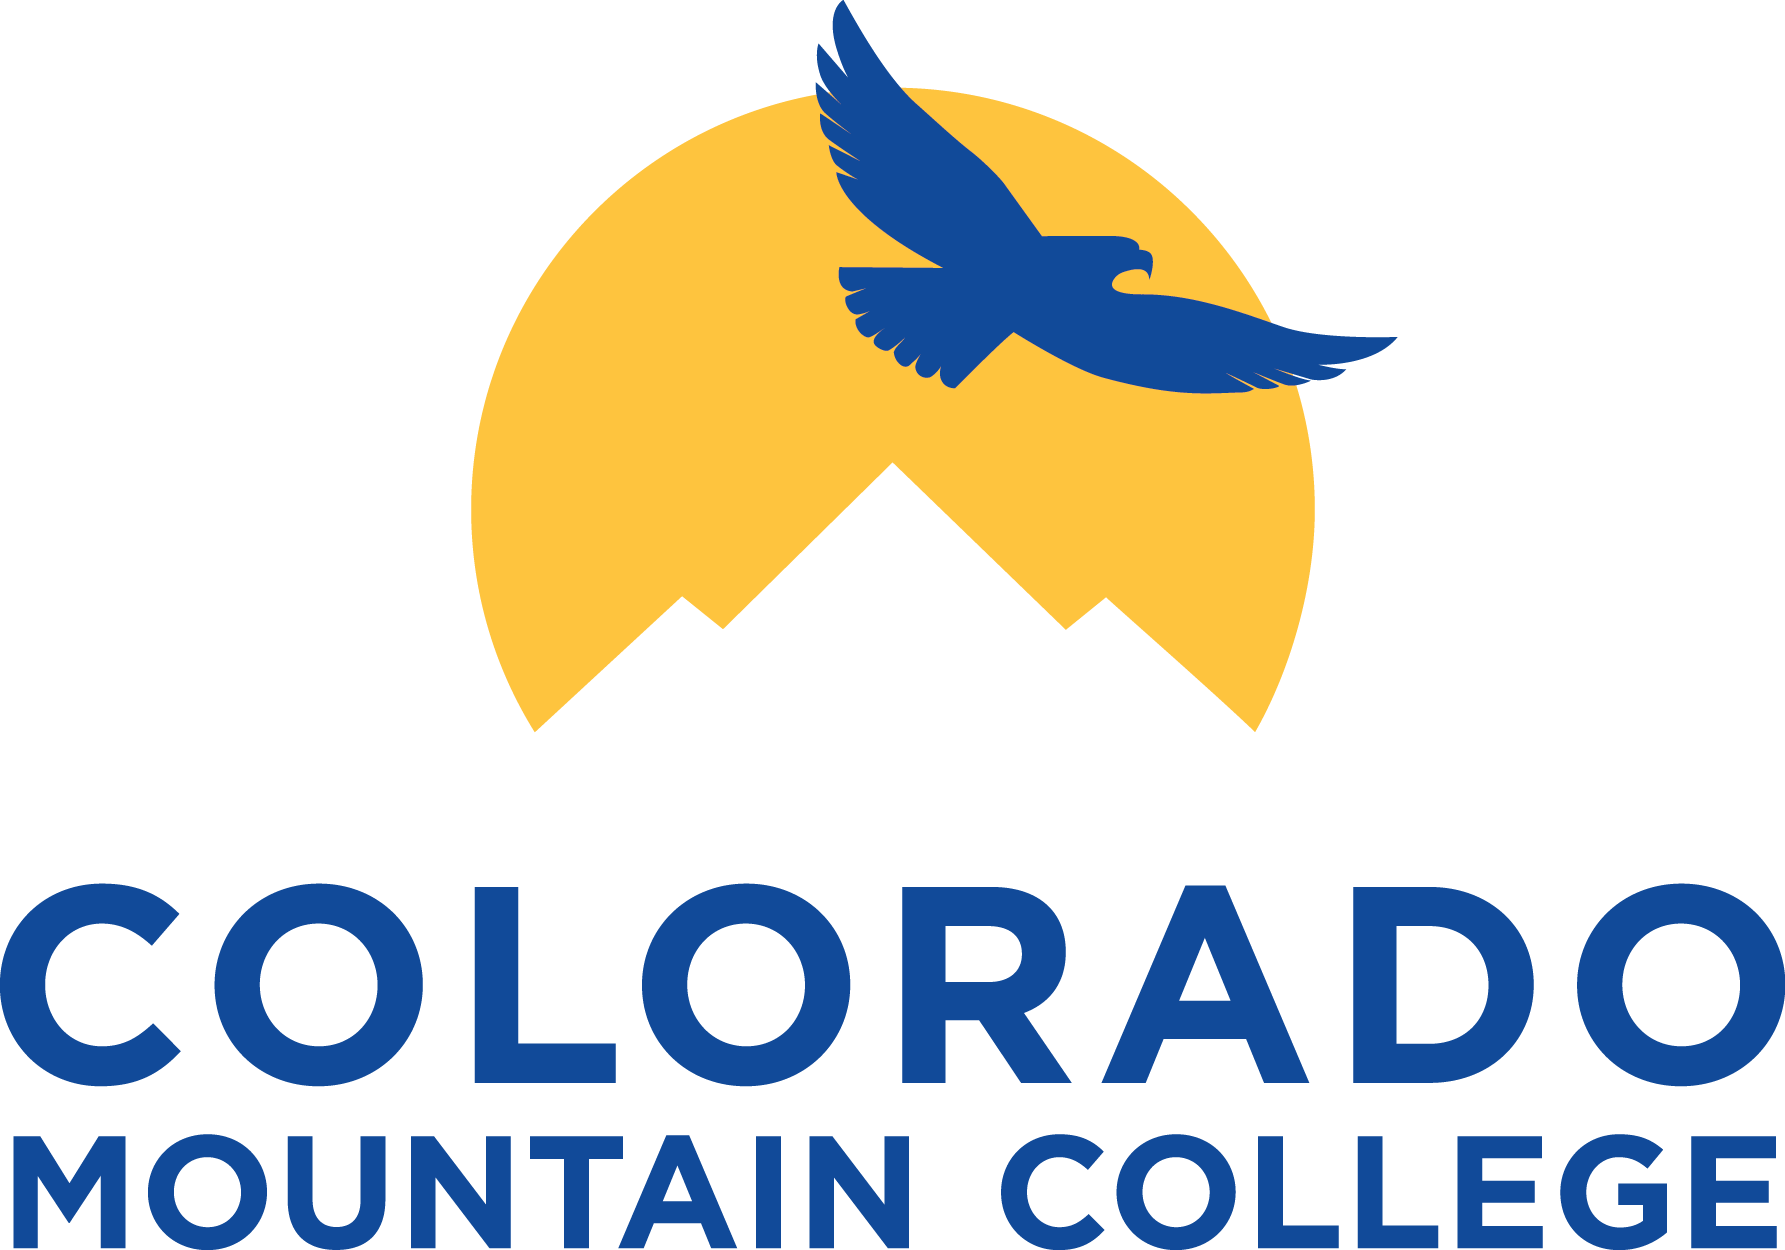 Organization logo of Colorado Mountain College